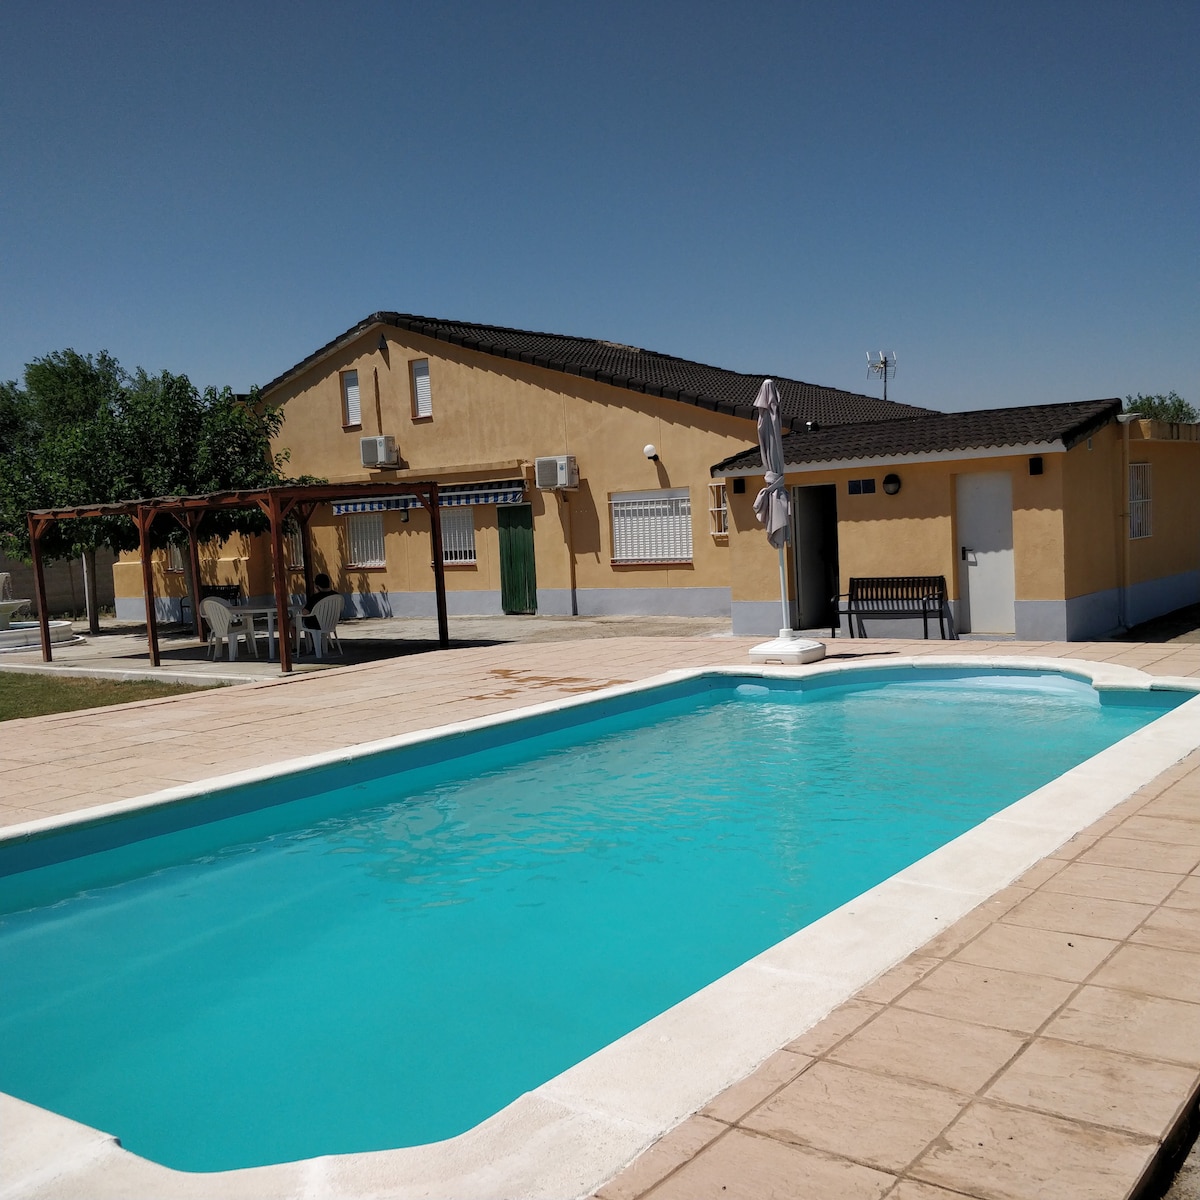 小木屋和私人泳池，距离Zaragoza仅20分钟车程。